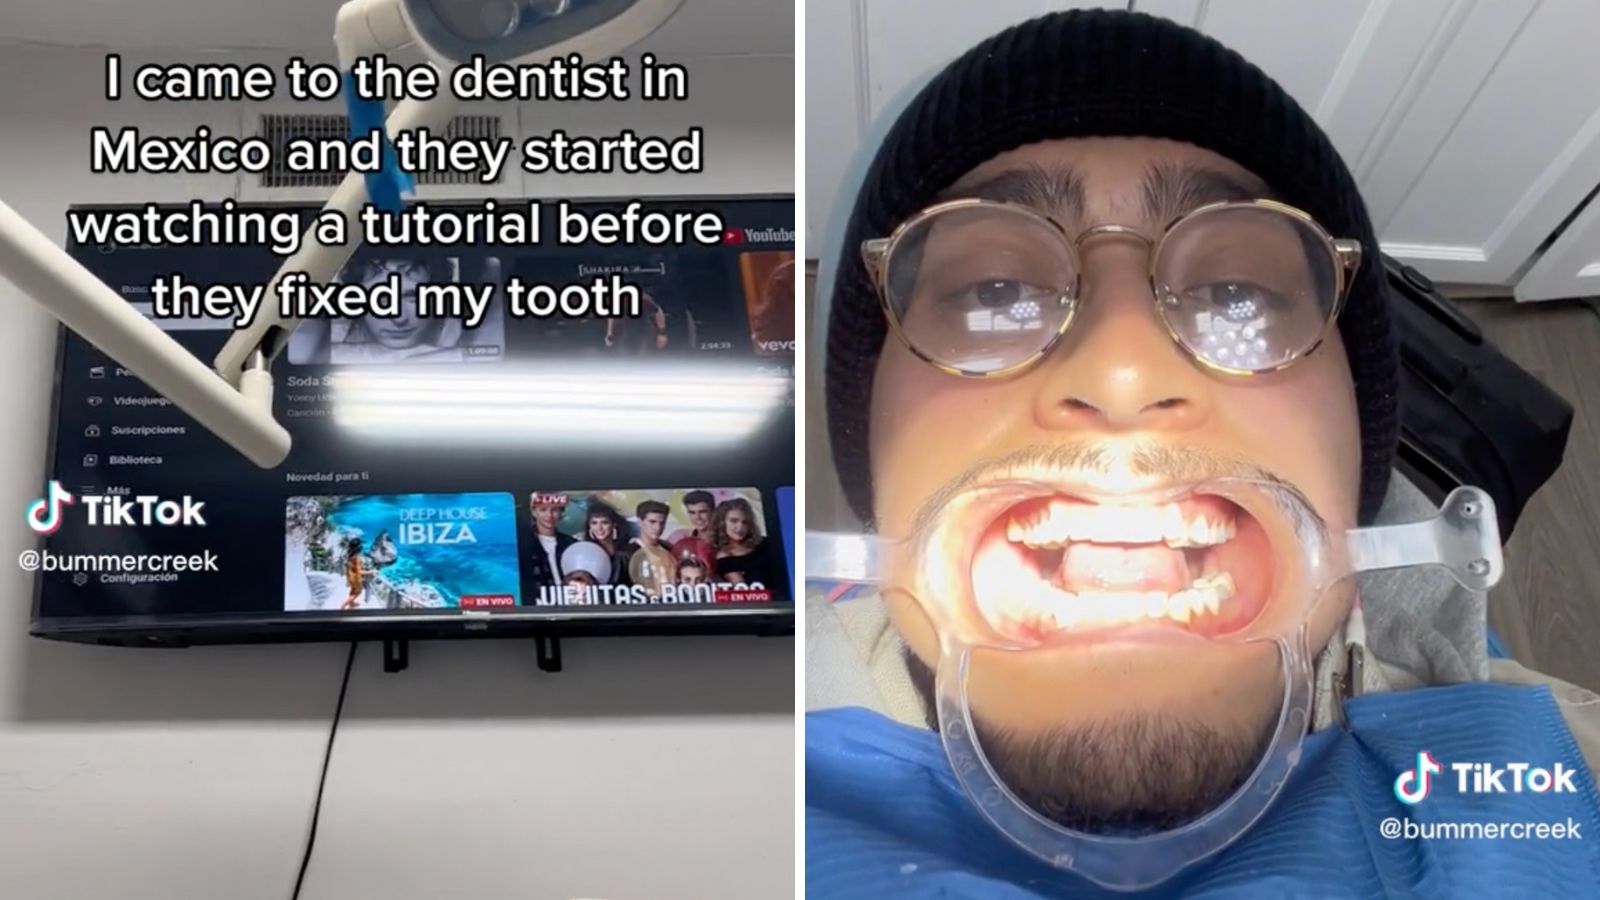 El dentista ve el tutorial antes de arreglar el diente del paciente en un video viral